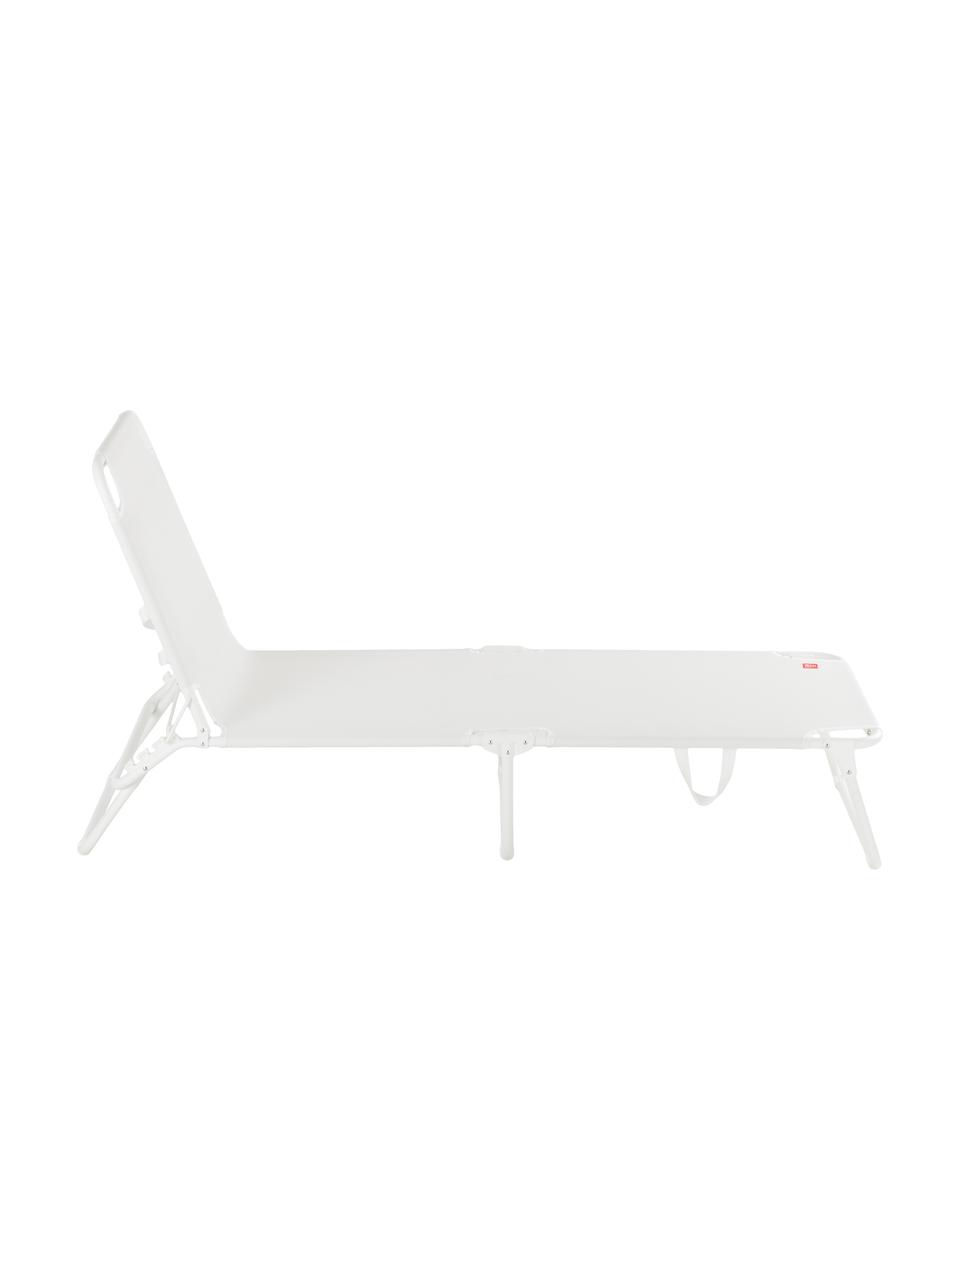 Leżak ogrodowy Fiam Amigo, Stelaż: aluminium, Biały, D 190 x S 58 cm